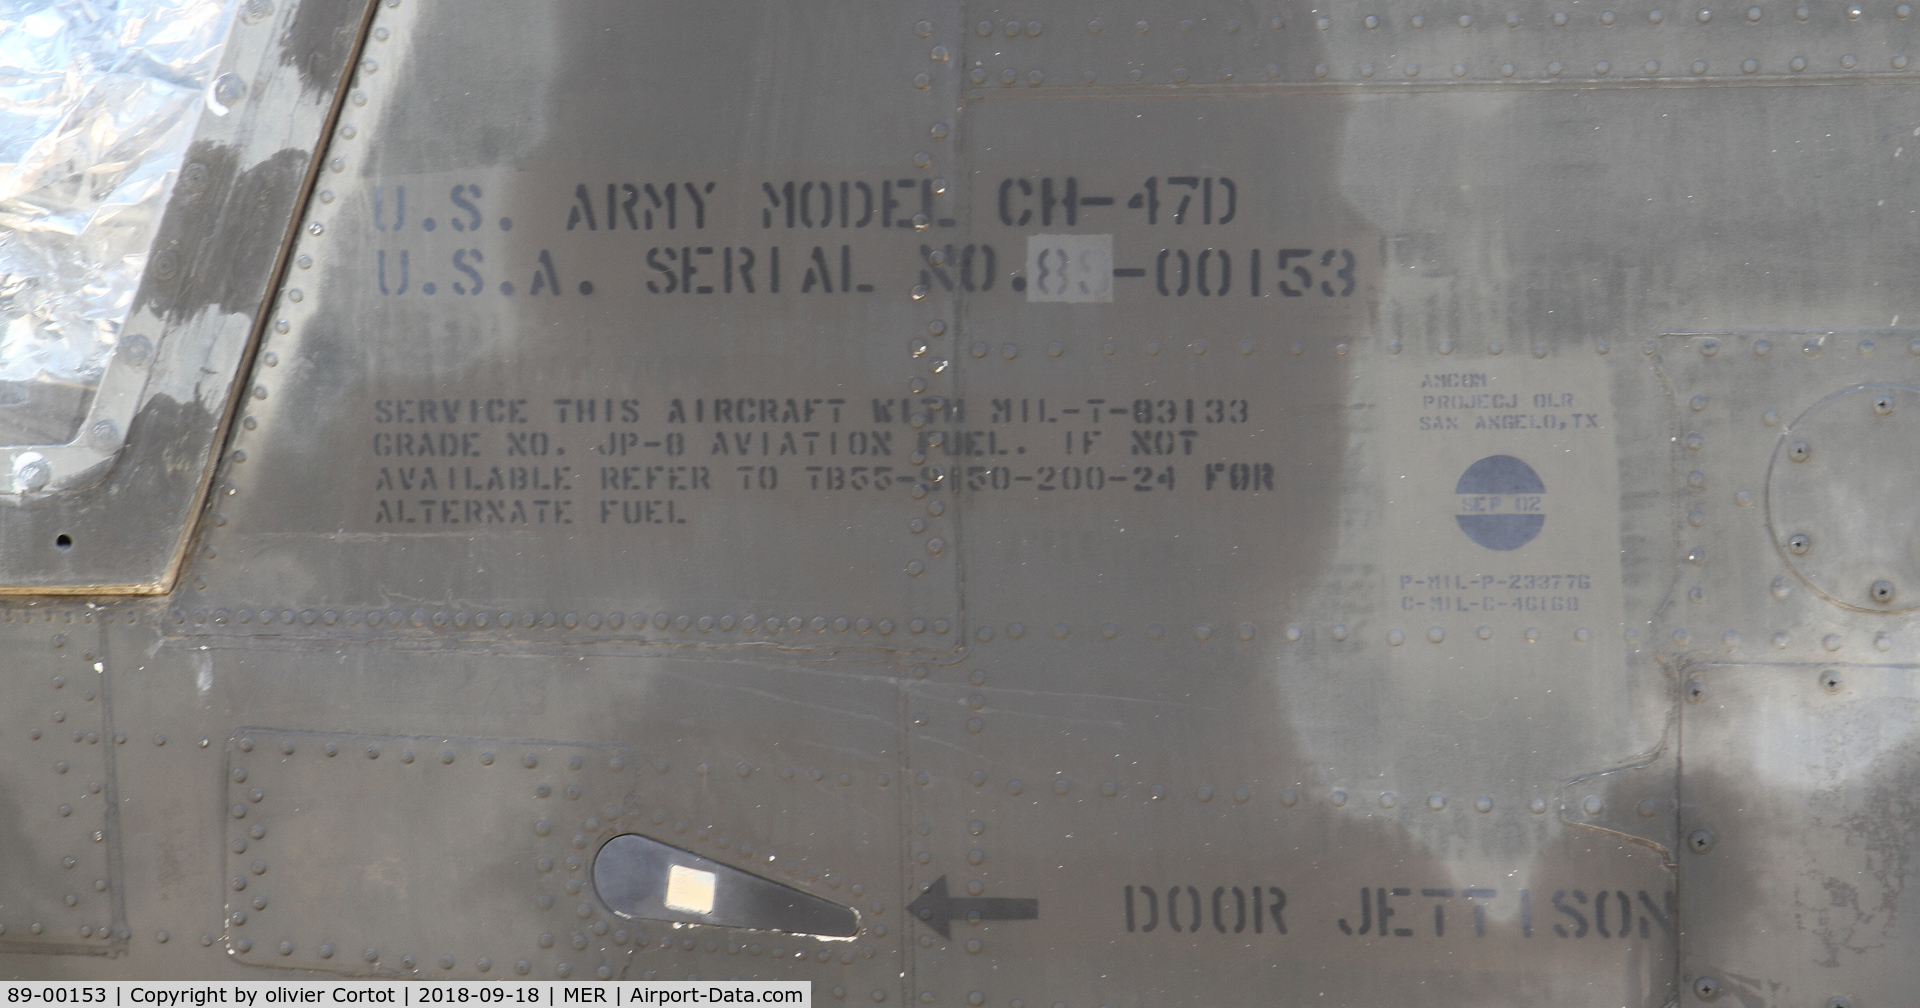 89-00153, 1968 Boeing CH-47D Chinook C/N M.3307, data markings